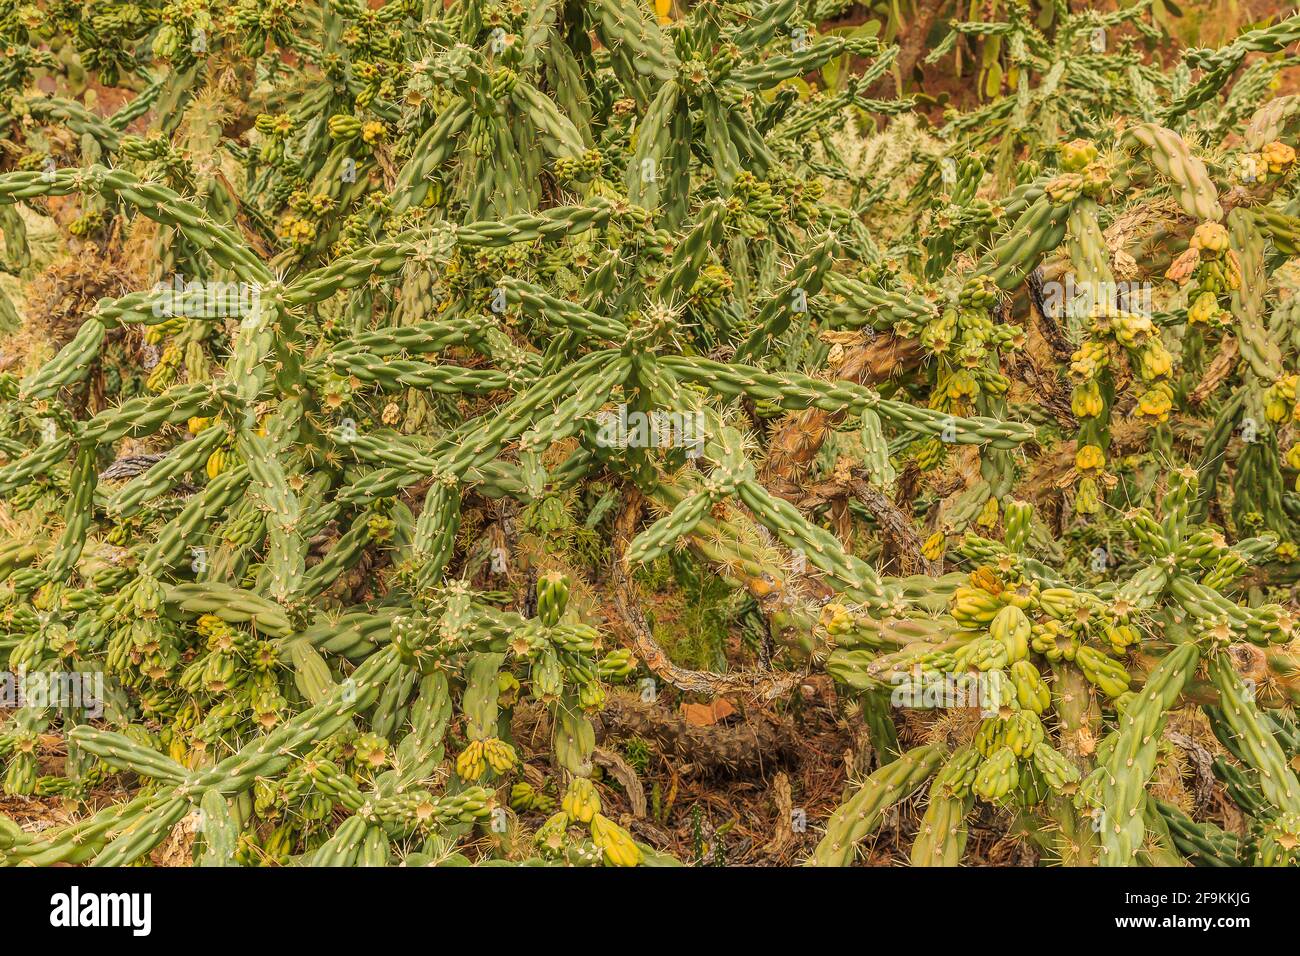 Kaktuspflanze Cylindropuntia imbricata aus der Wüste von Mexiko ohne Blüten im Herbst. Gepflanzt im botanischen Garten auf steinigem Boden Stockfoto